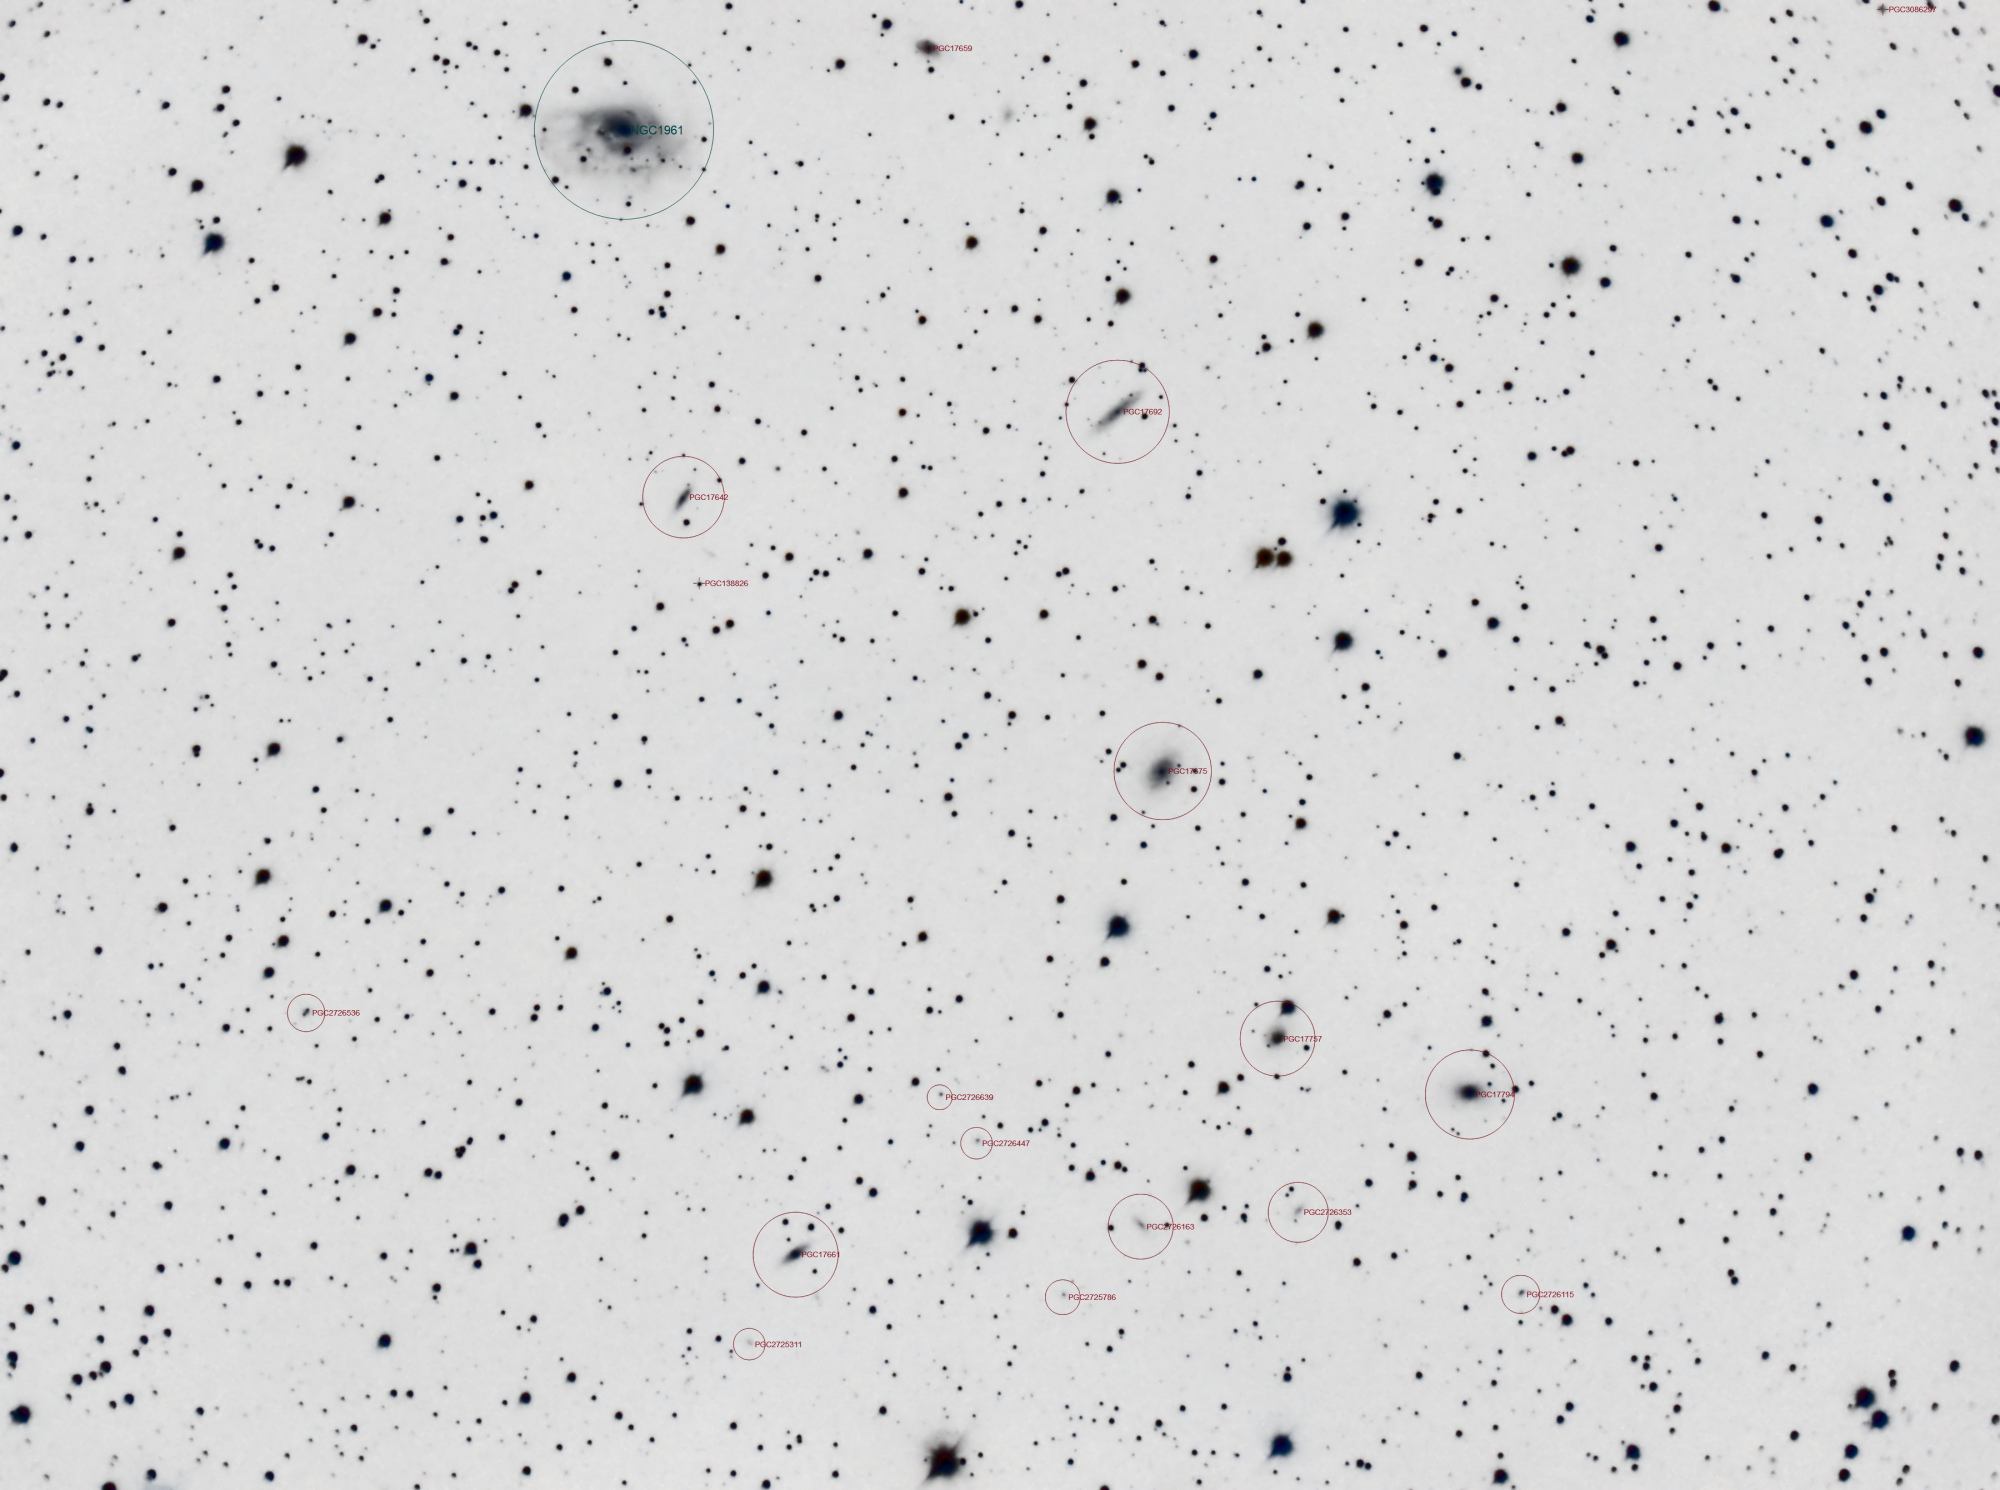 642c776a6f3f6_NGC1961_C8_RGB_gradient_photom_V3_Annotatedinvert.thumb.jpg.c59eac0d378a289100c137ed357c965d.jpg